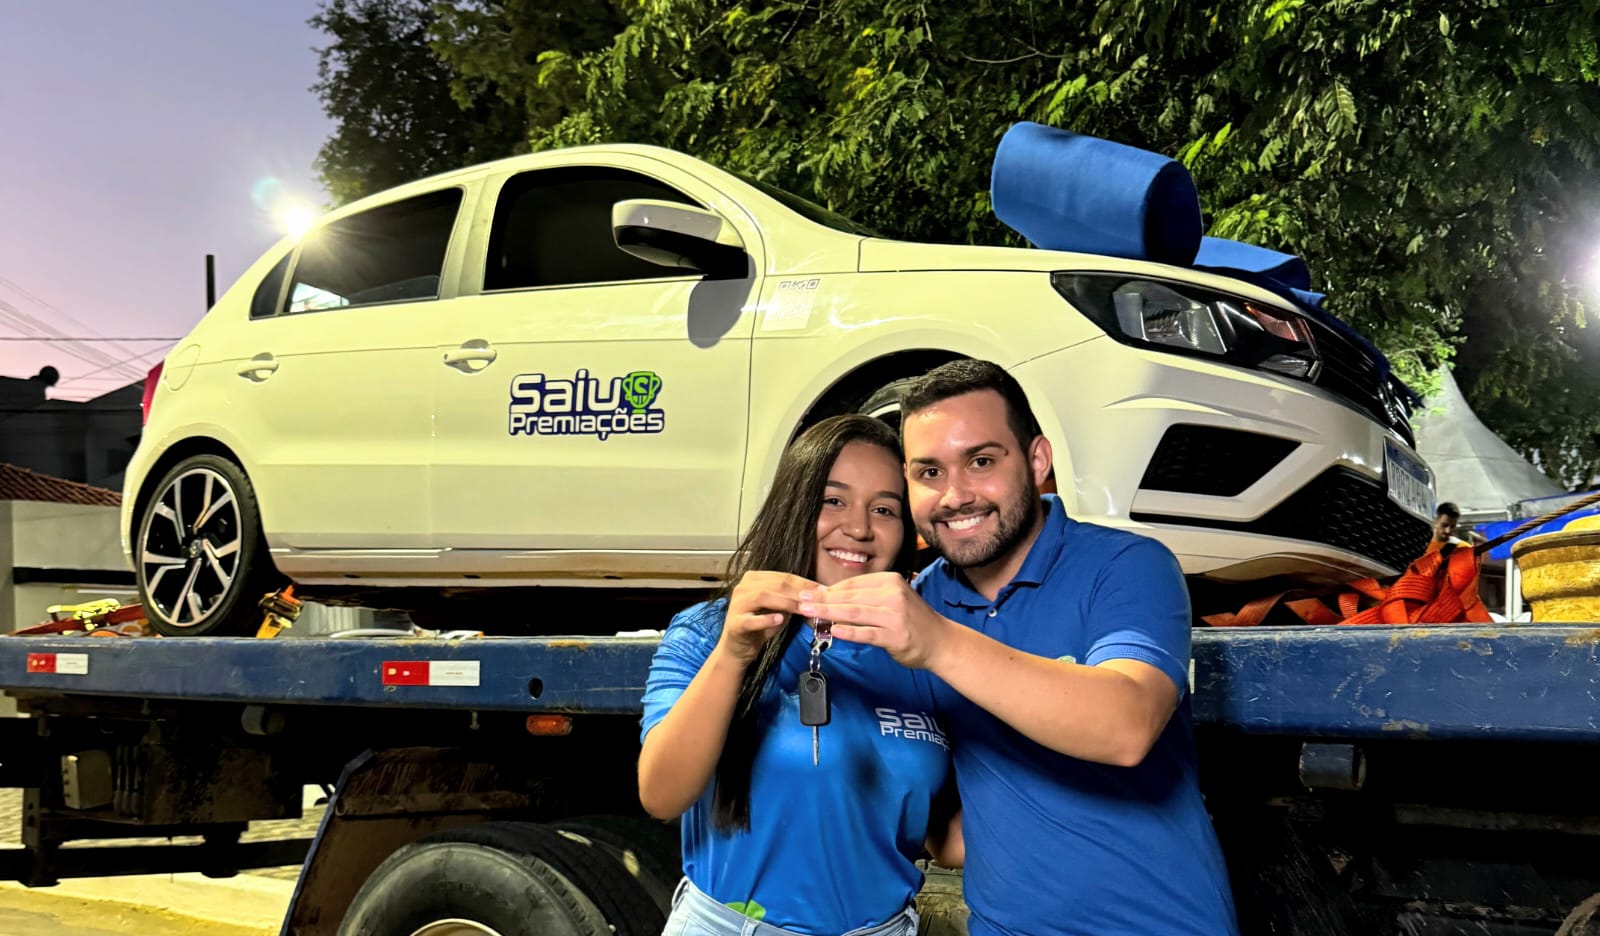 Saiu Premiações entrega carro gol para uma moradora de Jordânia-MG